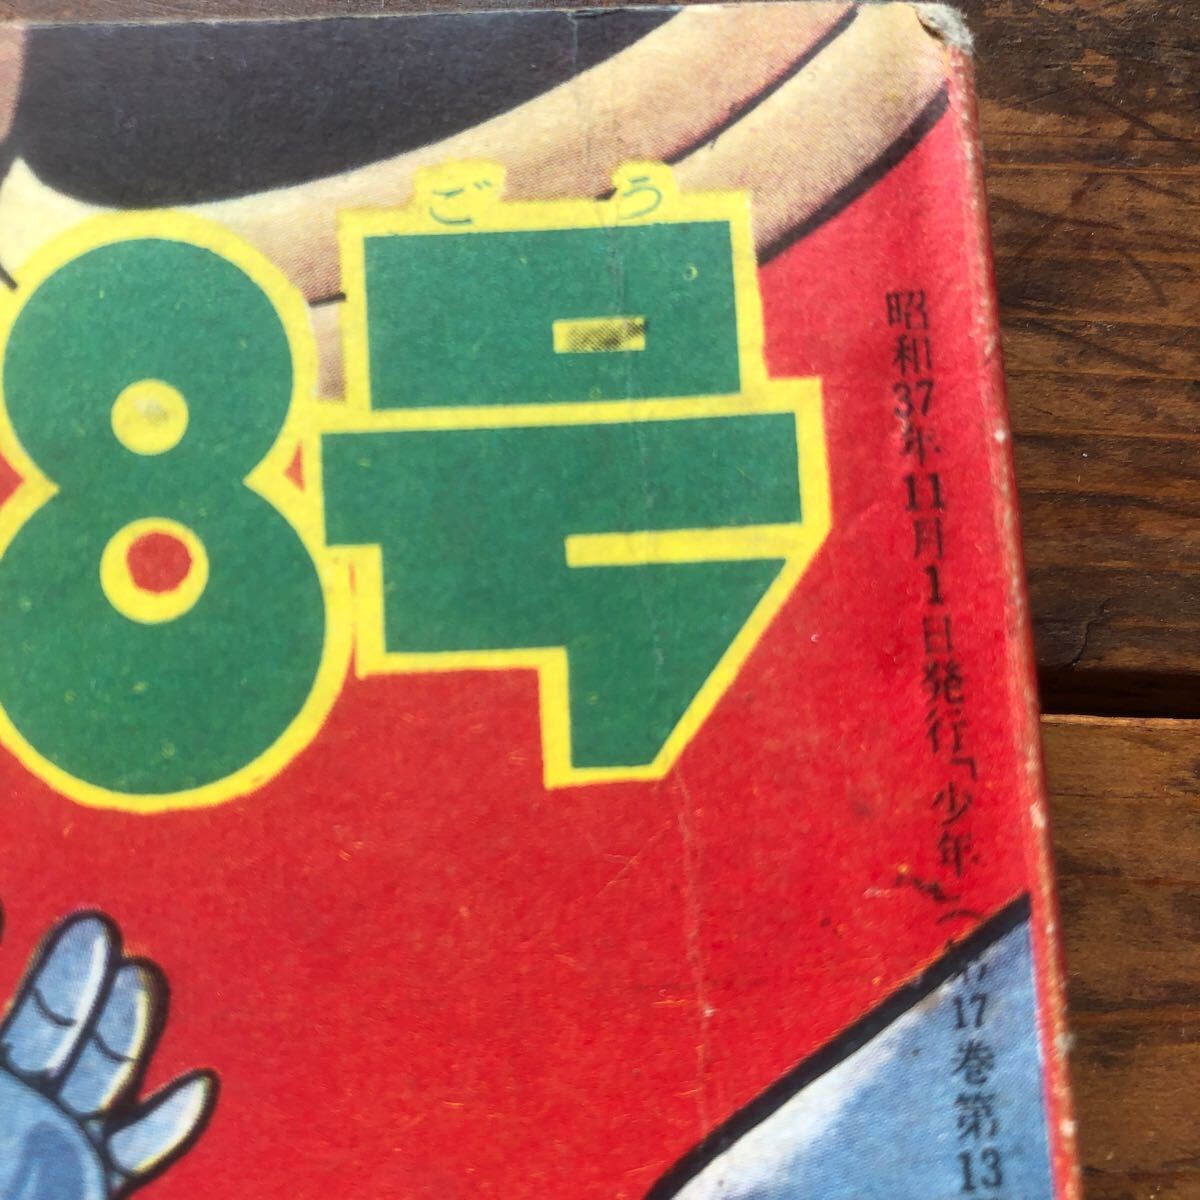  Showa Retro 1960\' годы Kobunsha Vintage манга книга@ старый ... подросток дополнение книга@ Tetsujin 28 номер ширина гора блеск подлинная вещь старая книга ①